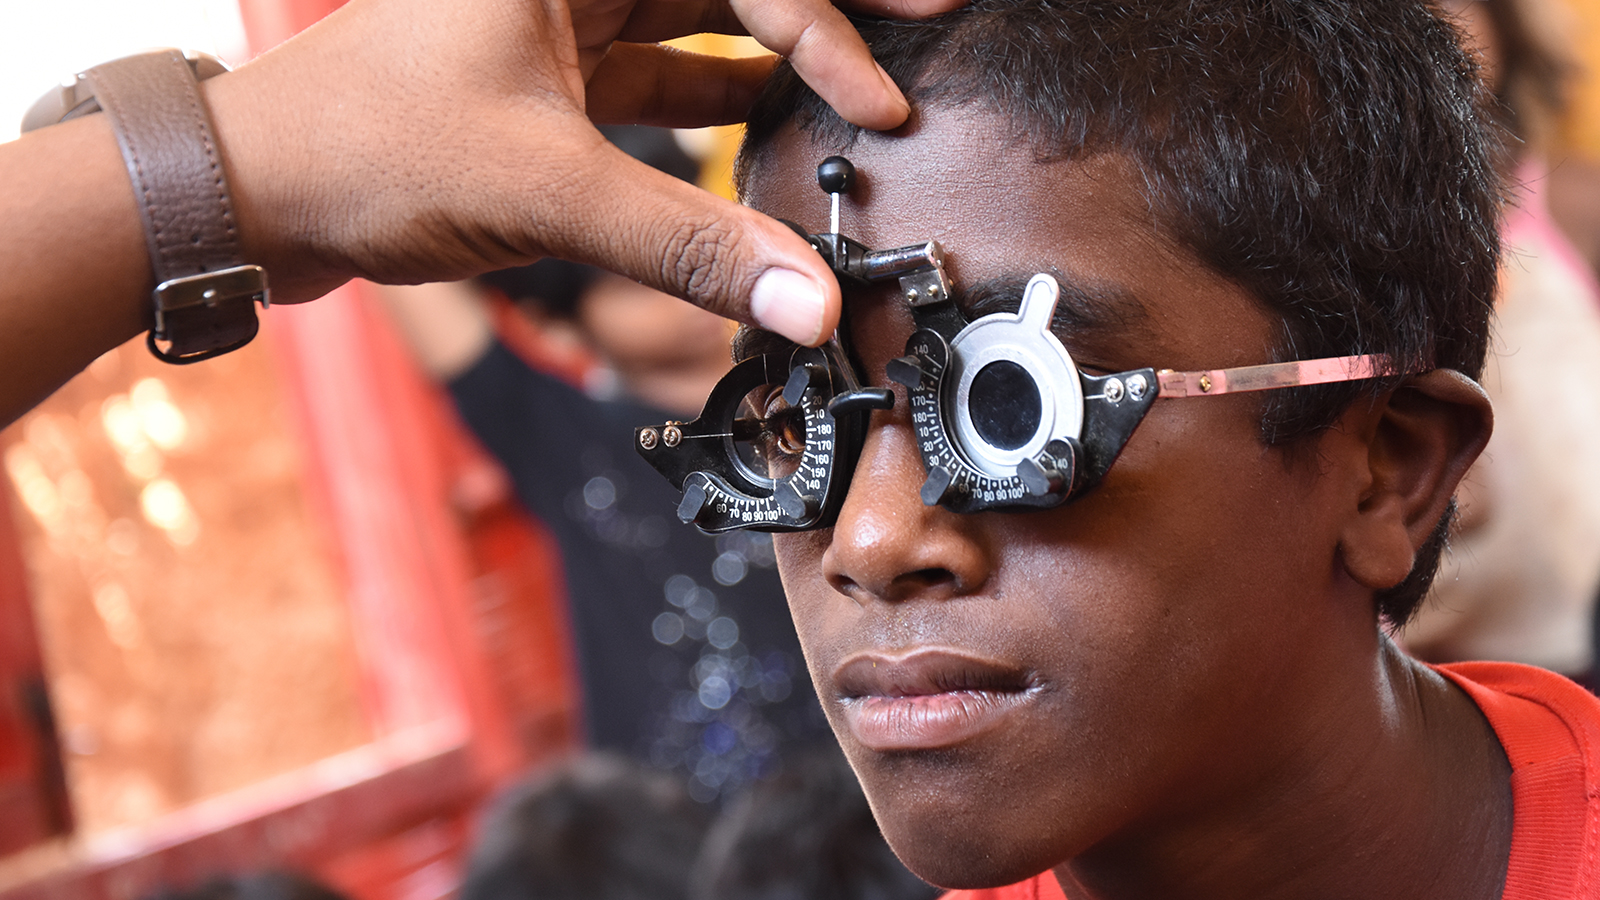 ‪المبادرة وزعت 260 ألف نظارة طبية مجانا‬  (الجزيرة)